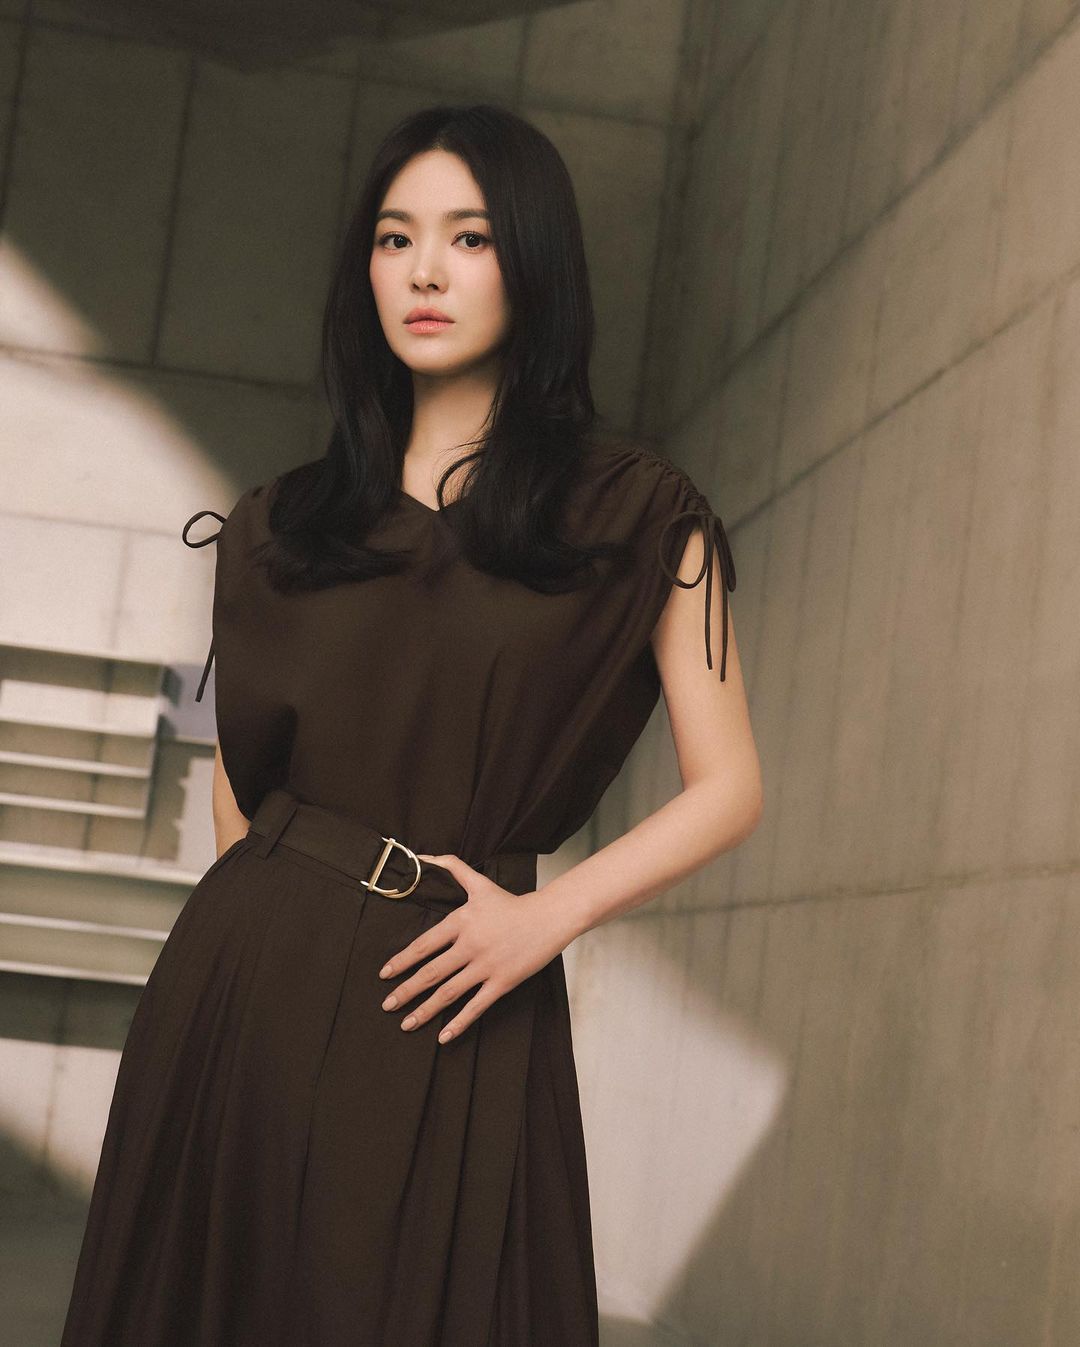 Song Hye Kyo khiến người hâm mộ thổn thức với vẻ đẹp không tuổi, đúng chuẩn tượng đài nhan sắc xứ Hàn - Ảnh 3.